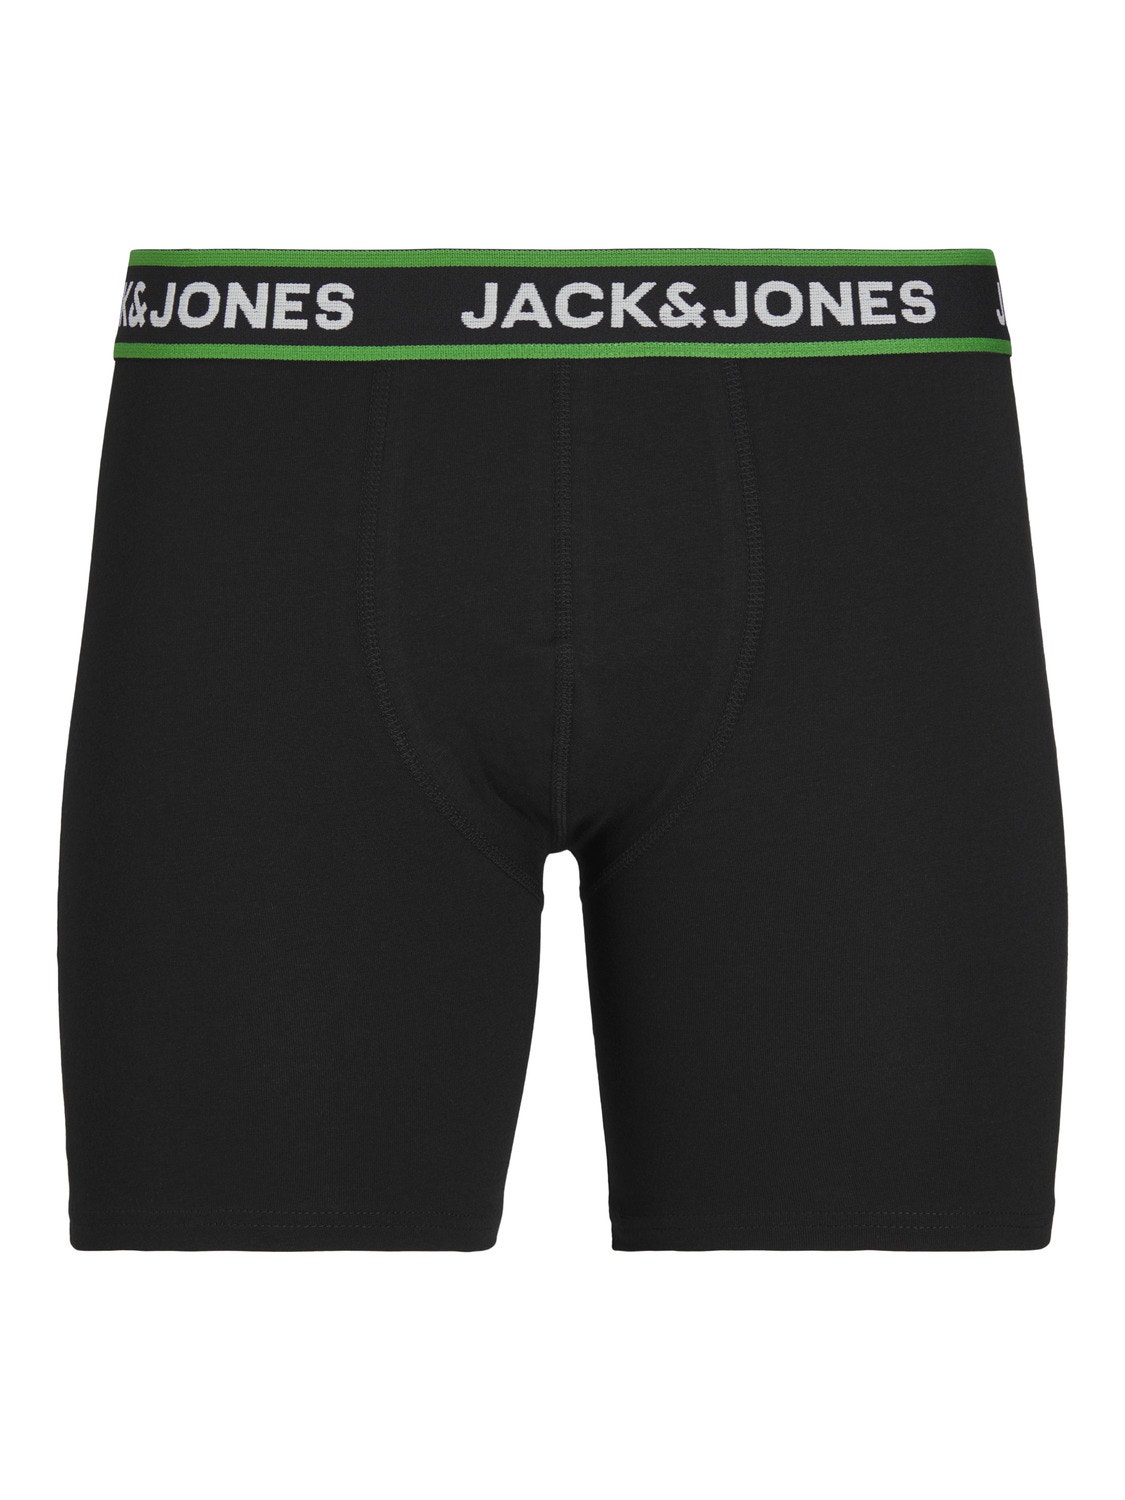 Jack & Jones 5 darabos kiszerelés Boxer briefs -Black - 12251386